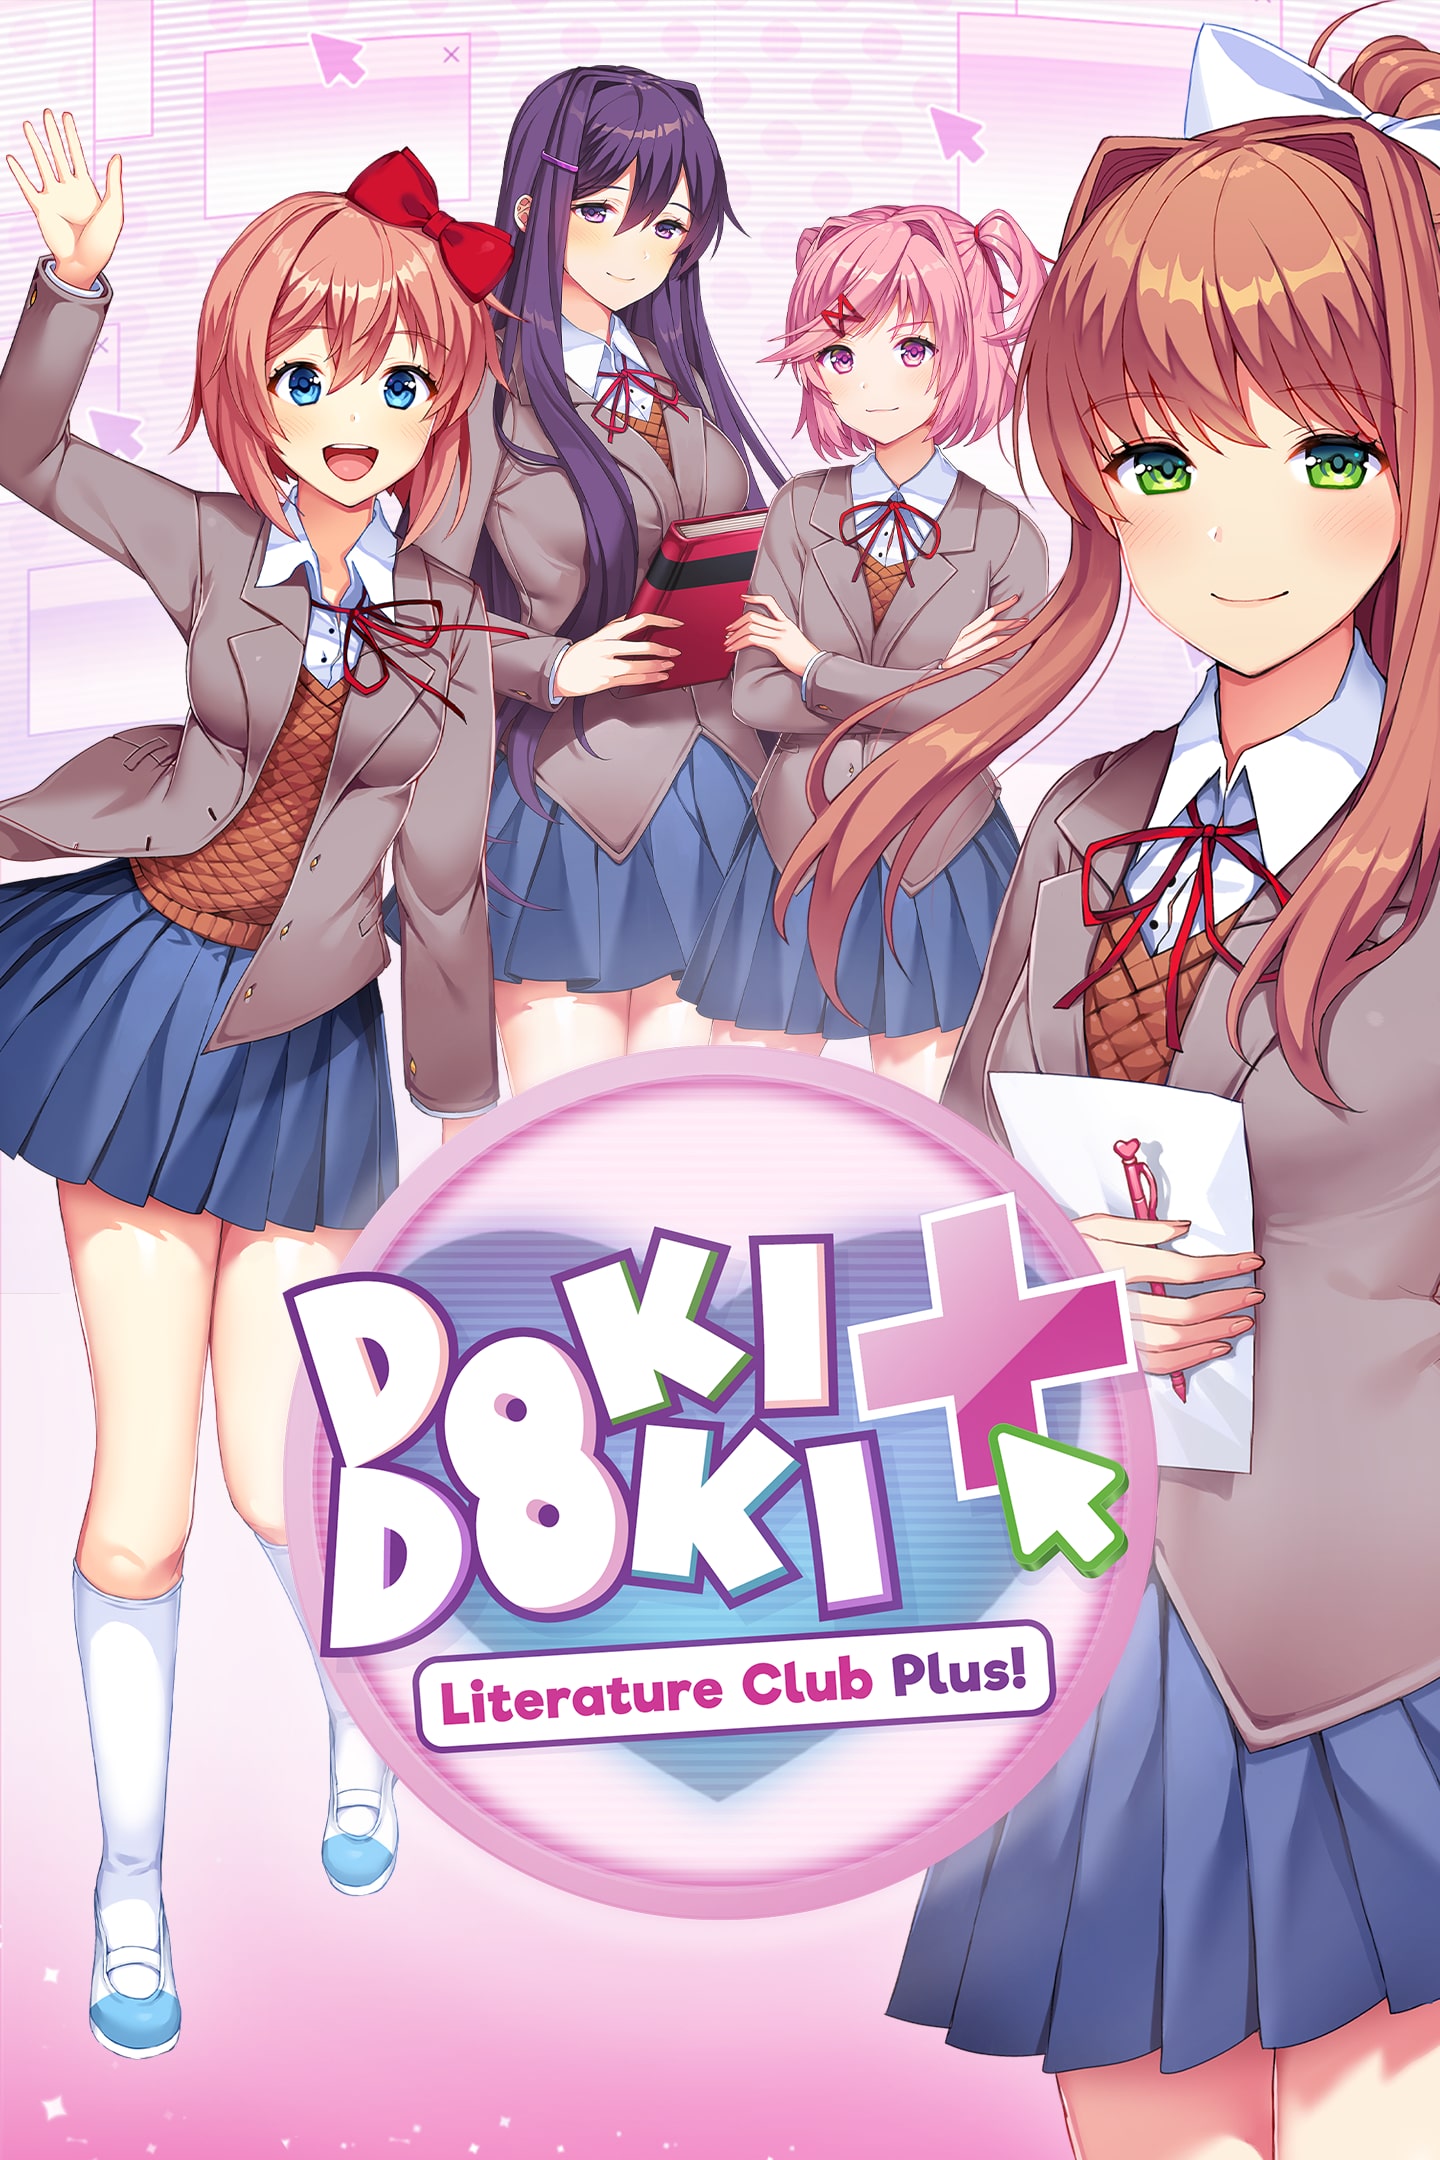 Doki Doki Literature Club Plus!